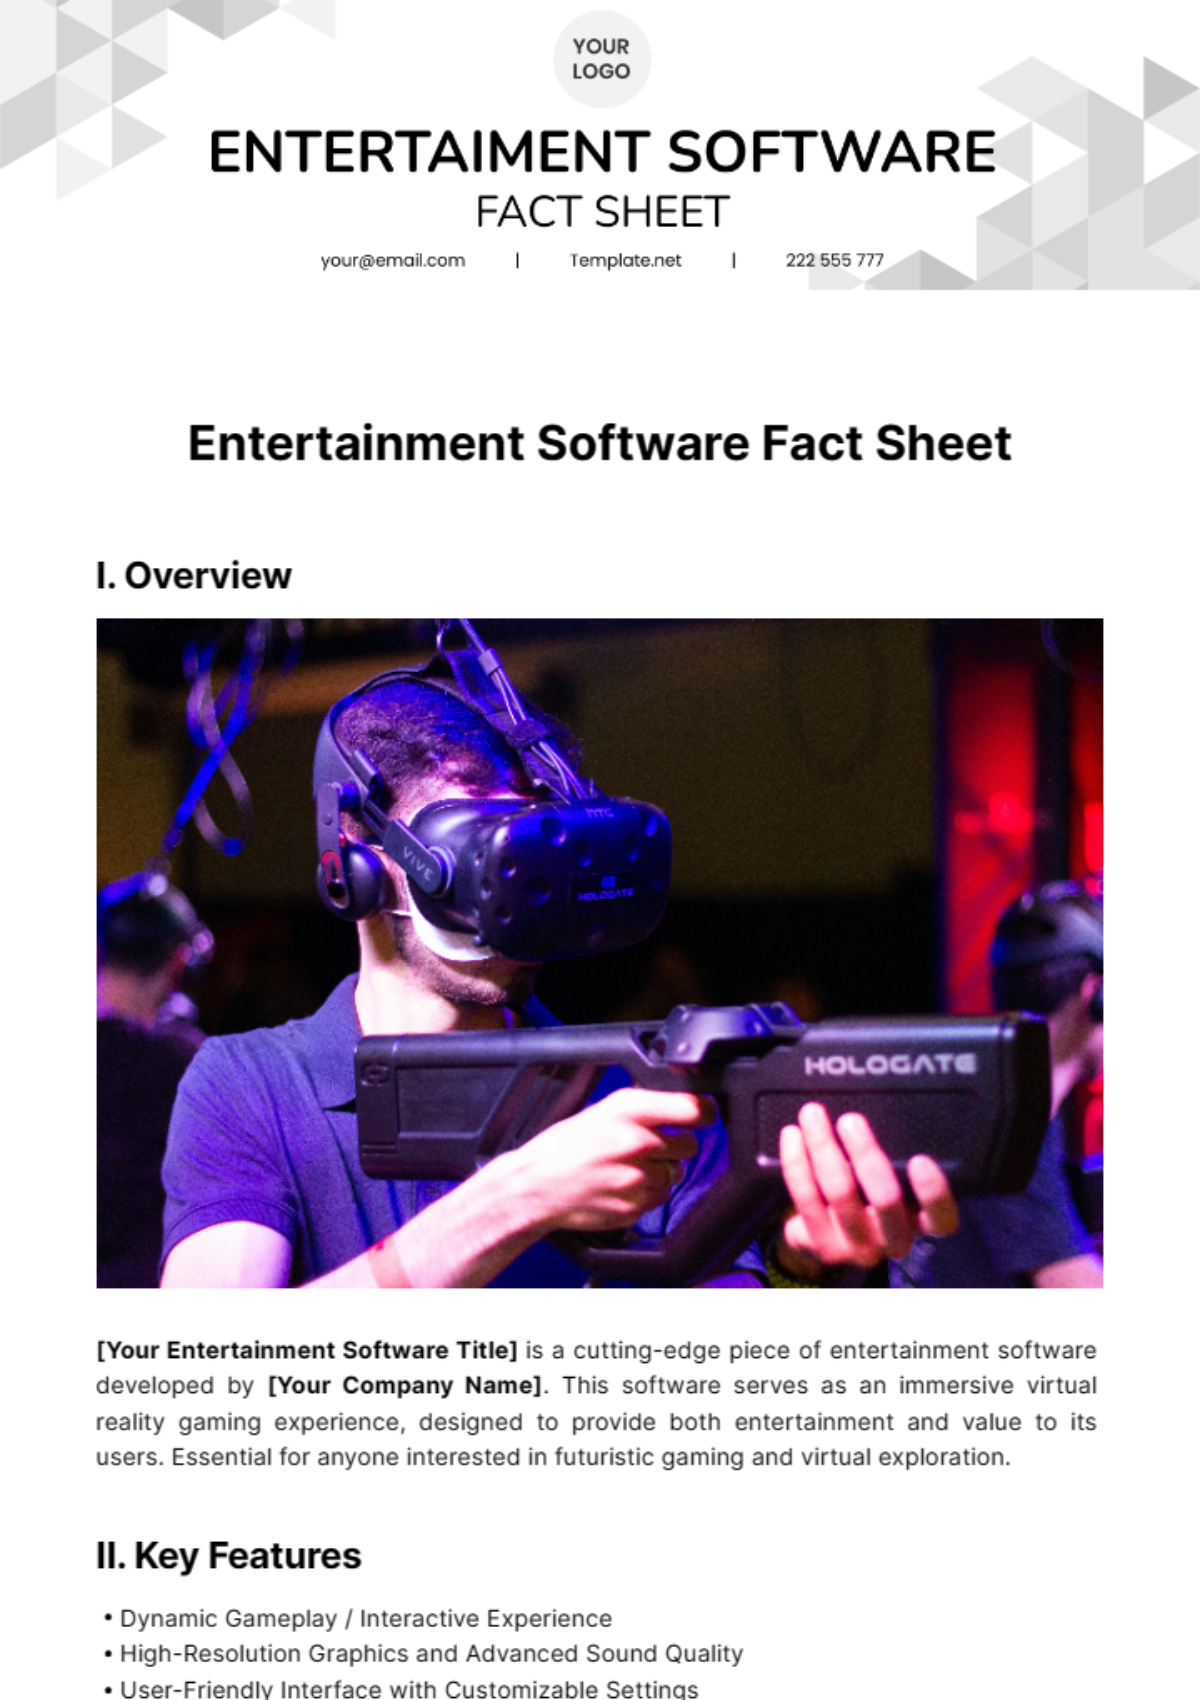 Entertainment Software Fact Sheet Template